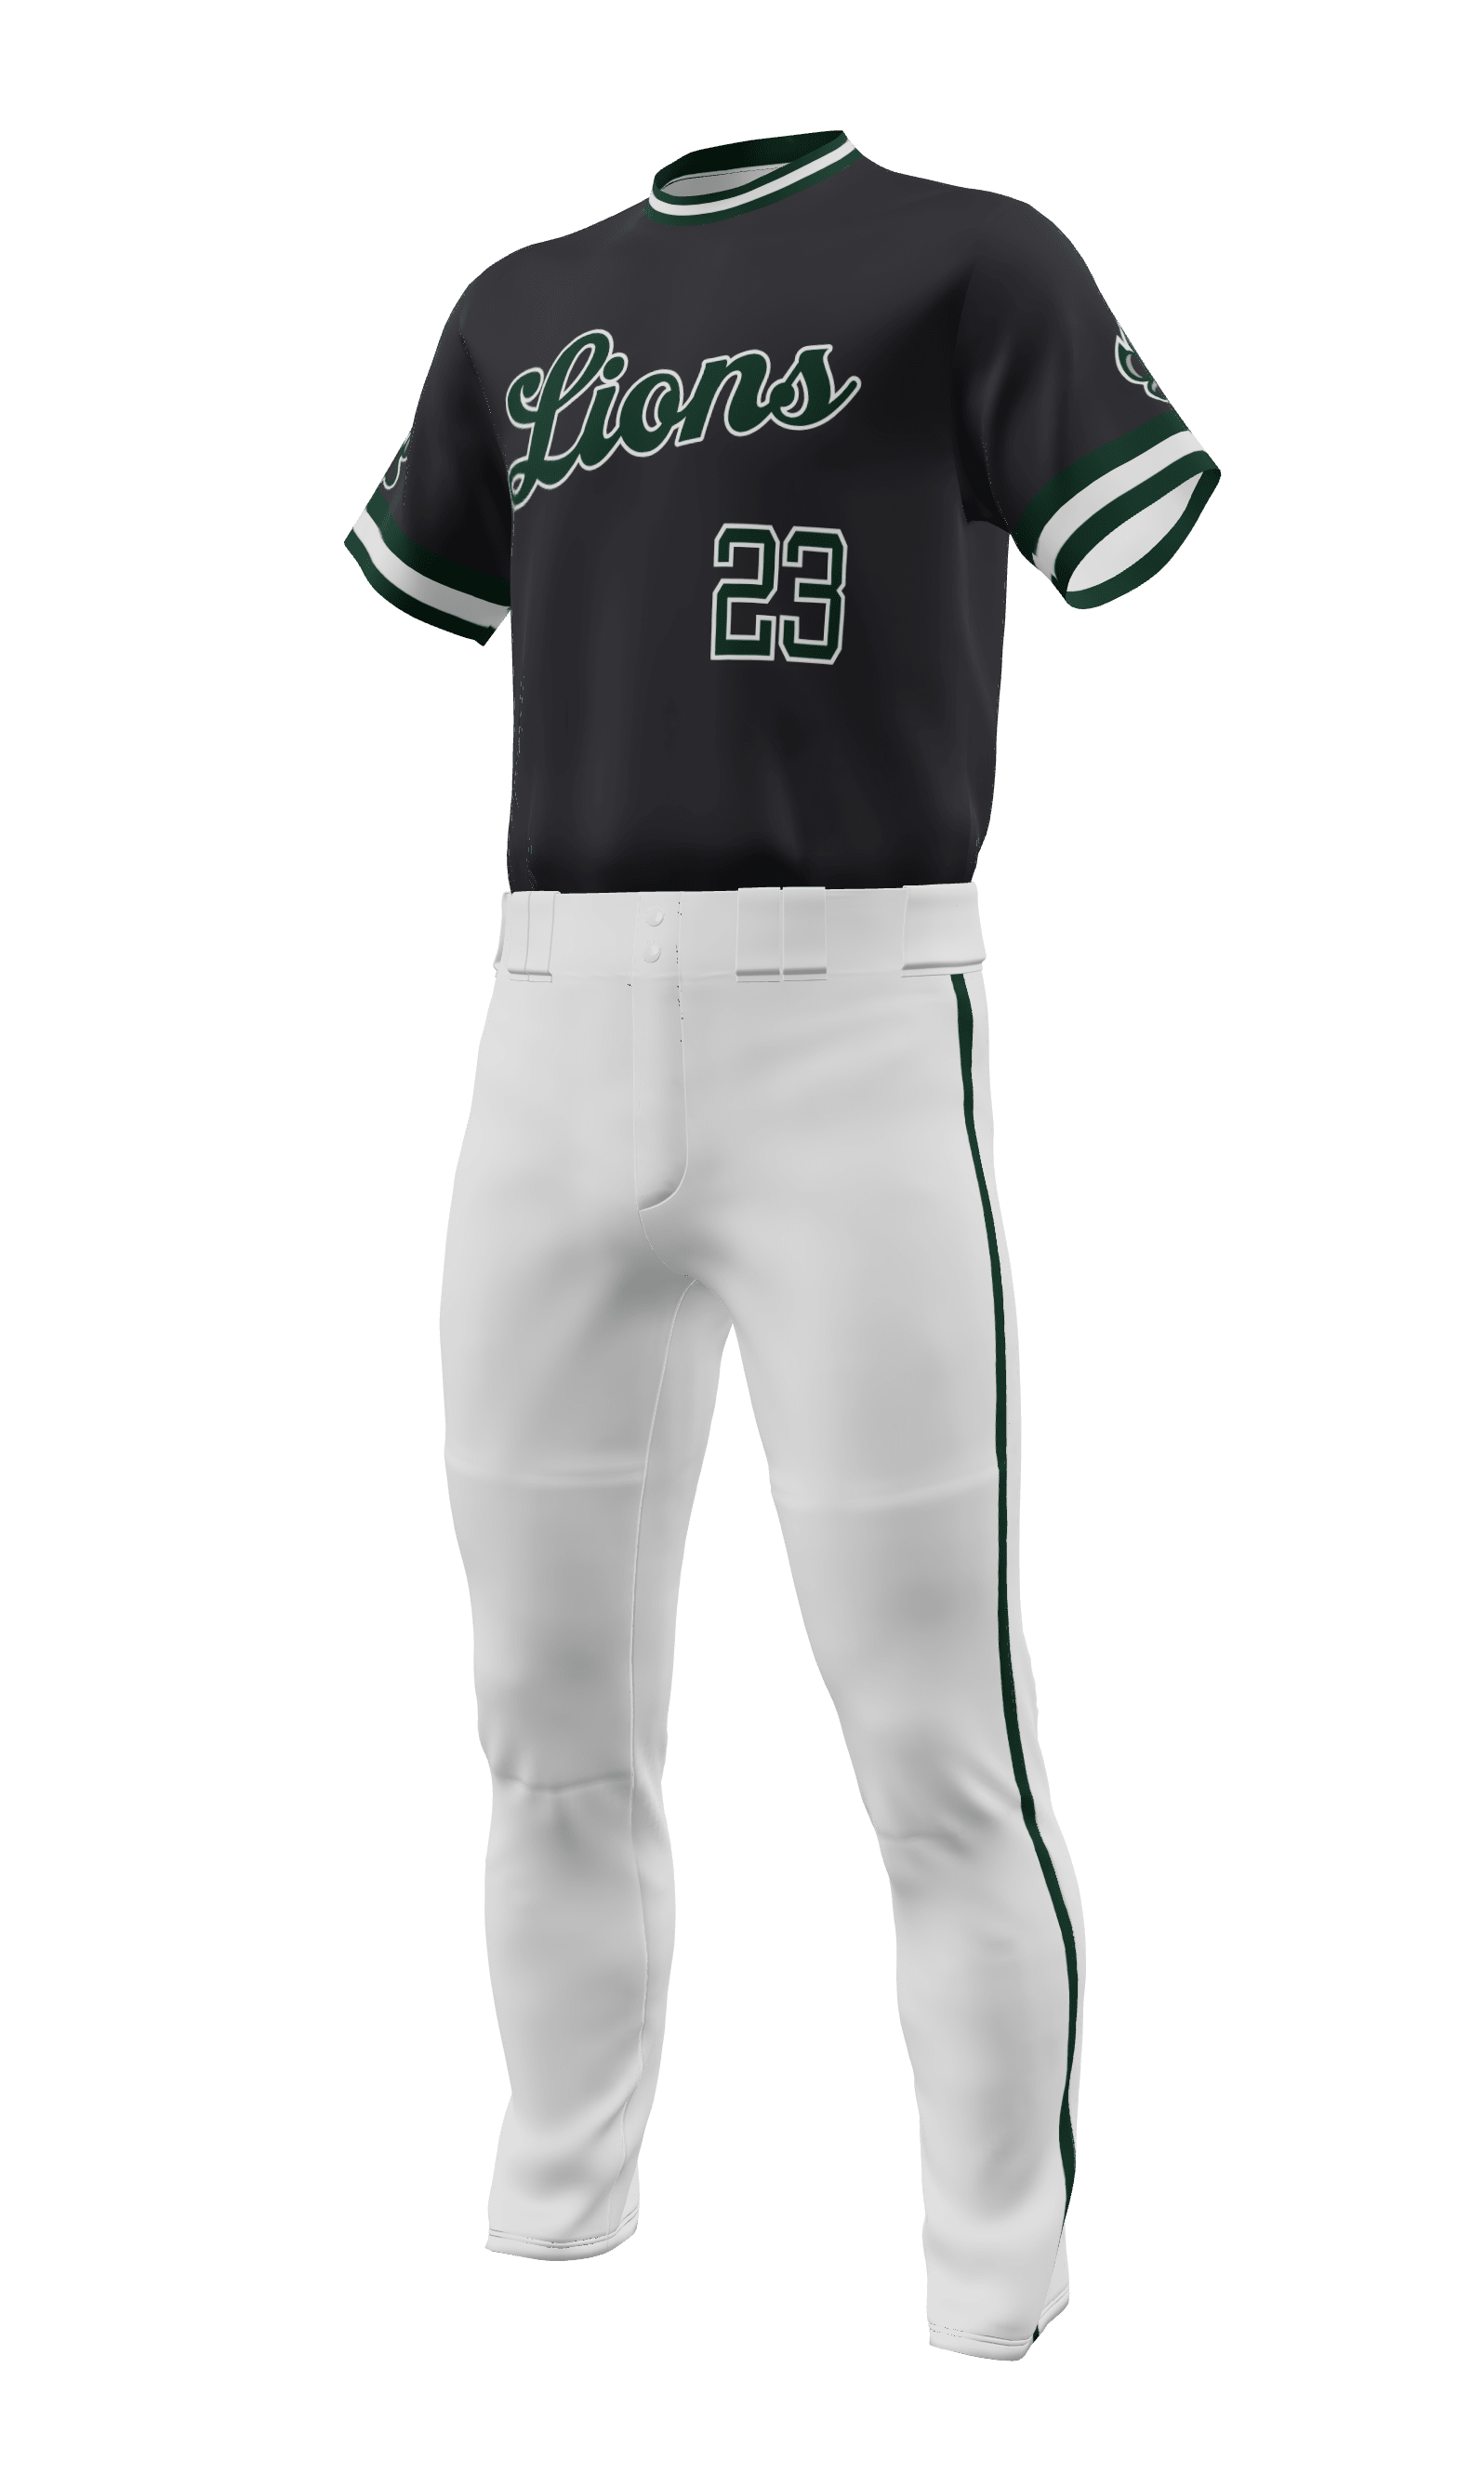 Youth Baseball Jerseys, Uniforms